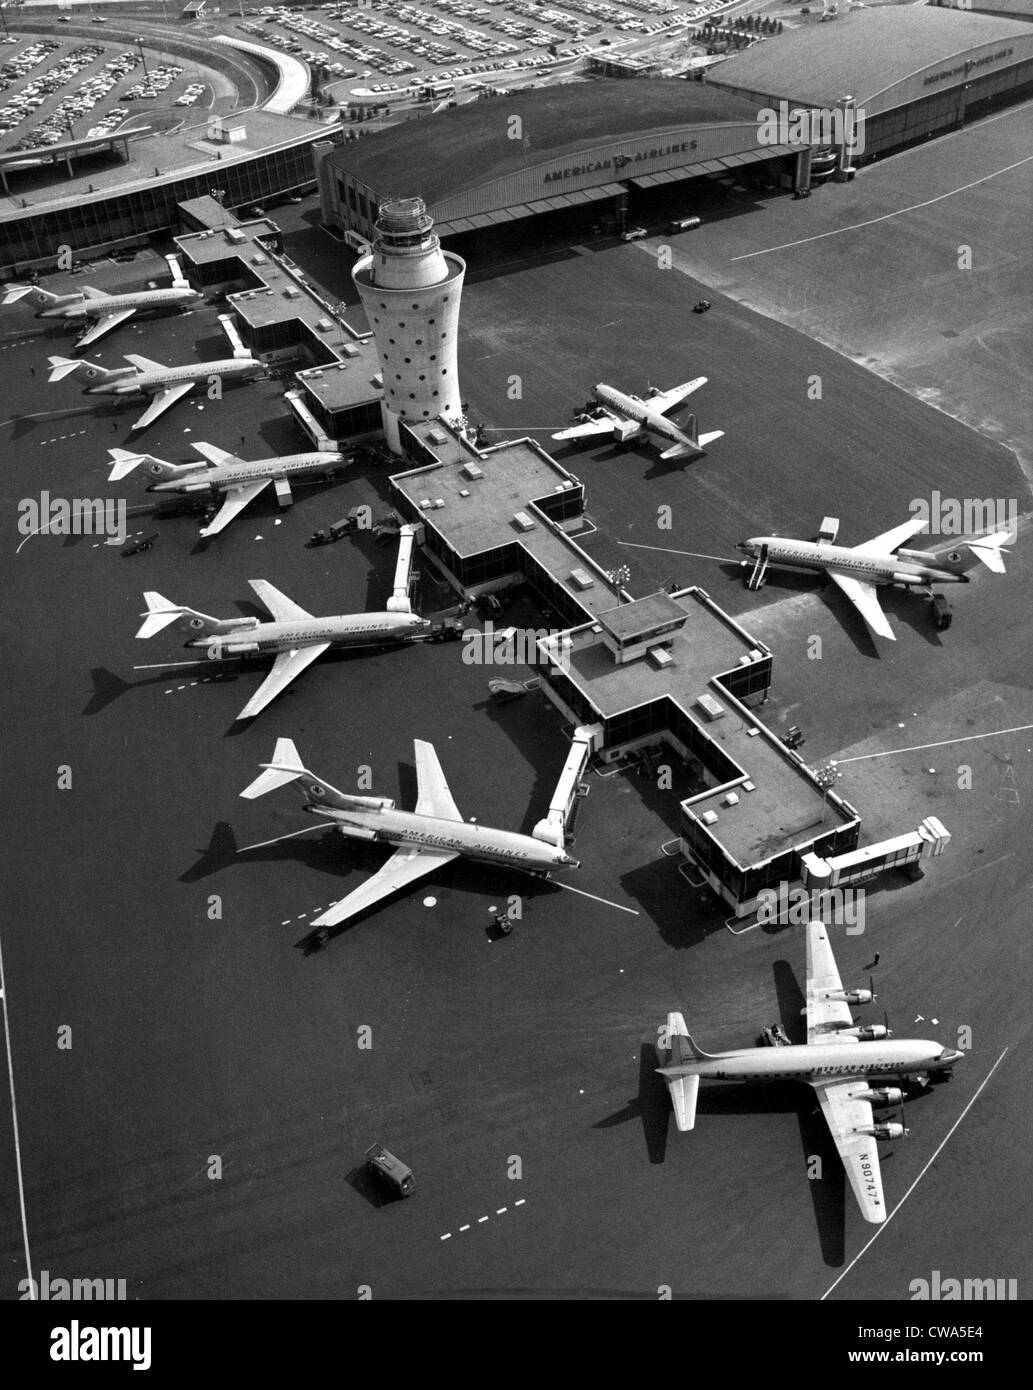 6 727 Compagnie aérienne américaine Boeing Astrojets at LaGuardia Airport, New York, en 1965.. Avec la permission de la CSU : Archives / Everett Collection Banque D'Images